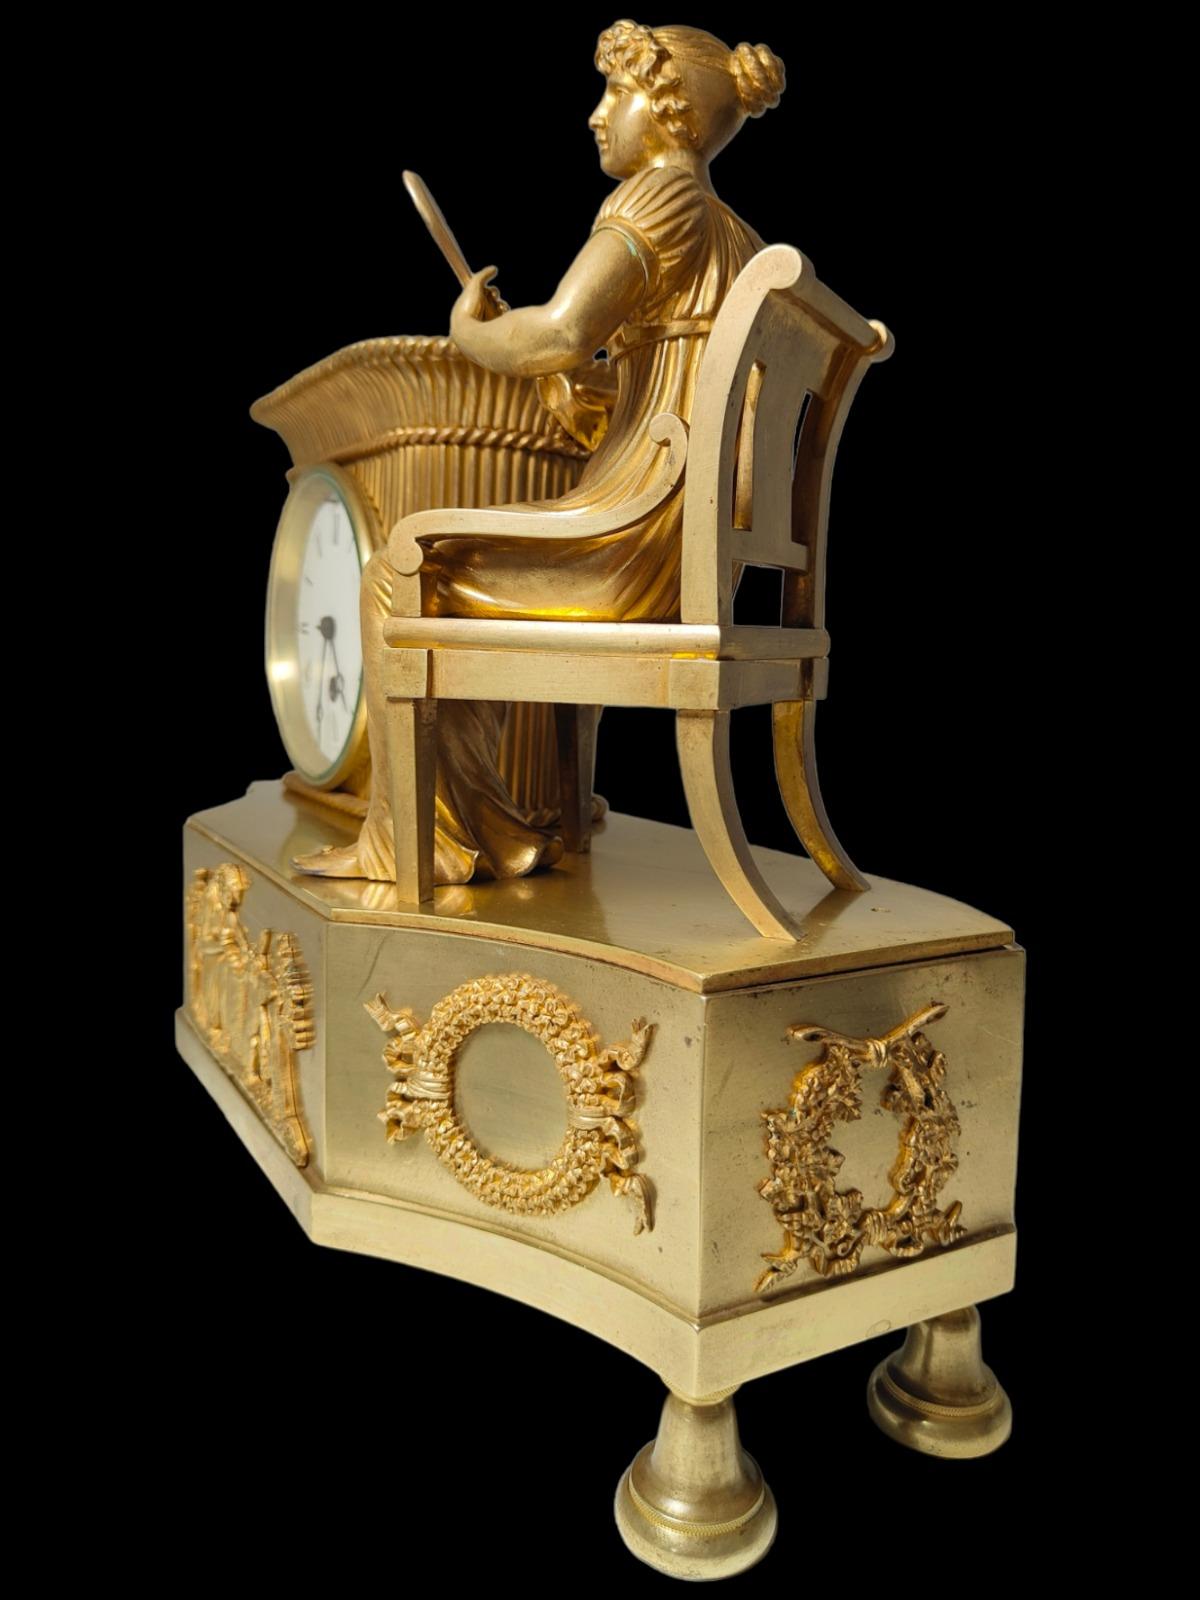 Elegant horloge en bronze du 19ème siècle.
Pendule française du 19ème siècle en bronze doré. La machine fonctionne et possède son pendule et sa clé. Modèle difficile à voir. Mesures : 35x32x15 cm.
bon état.